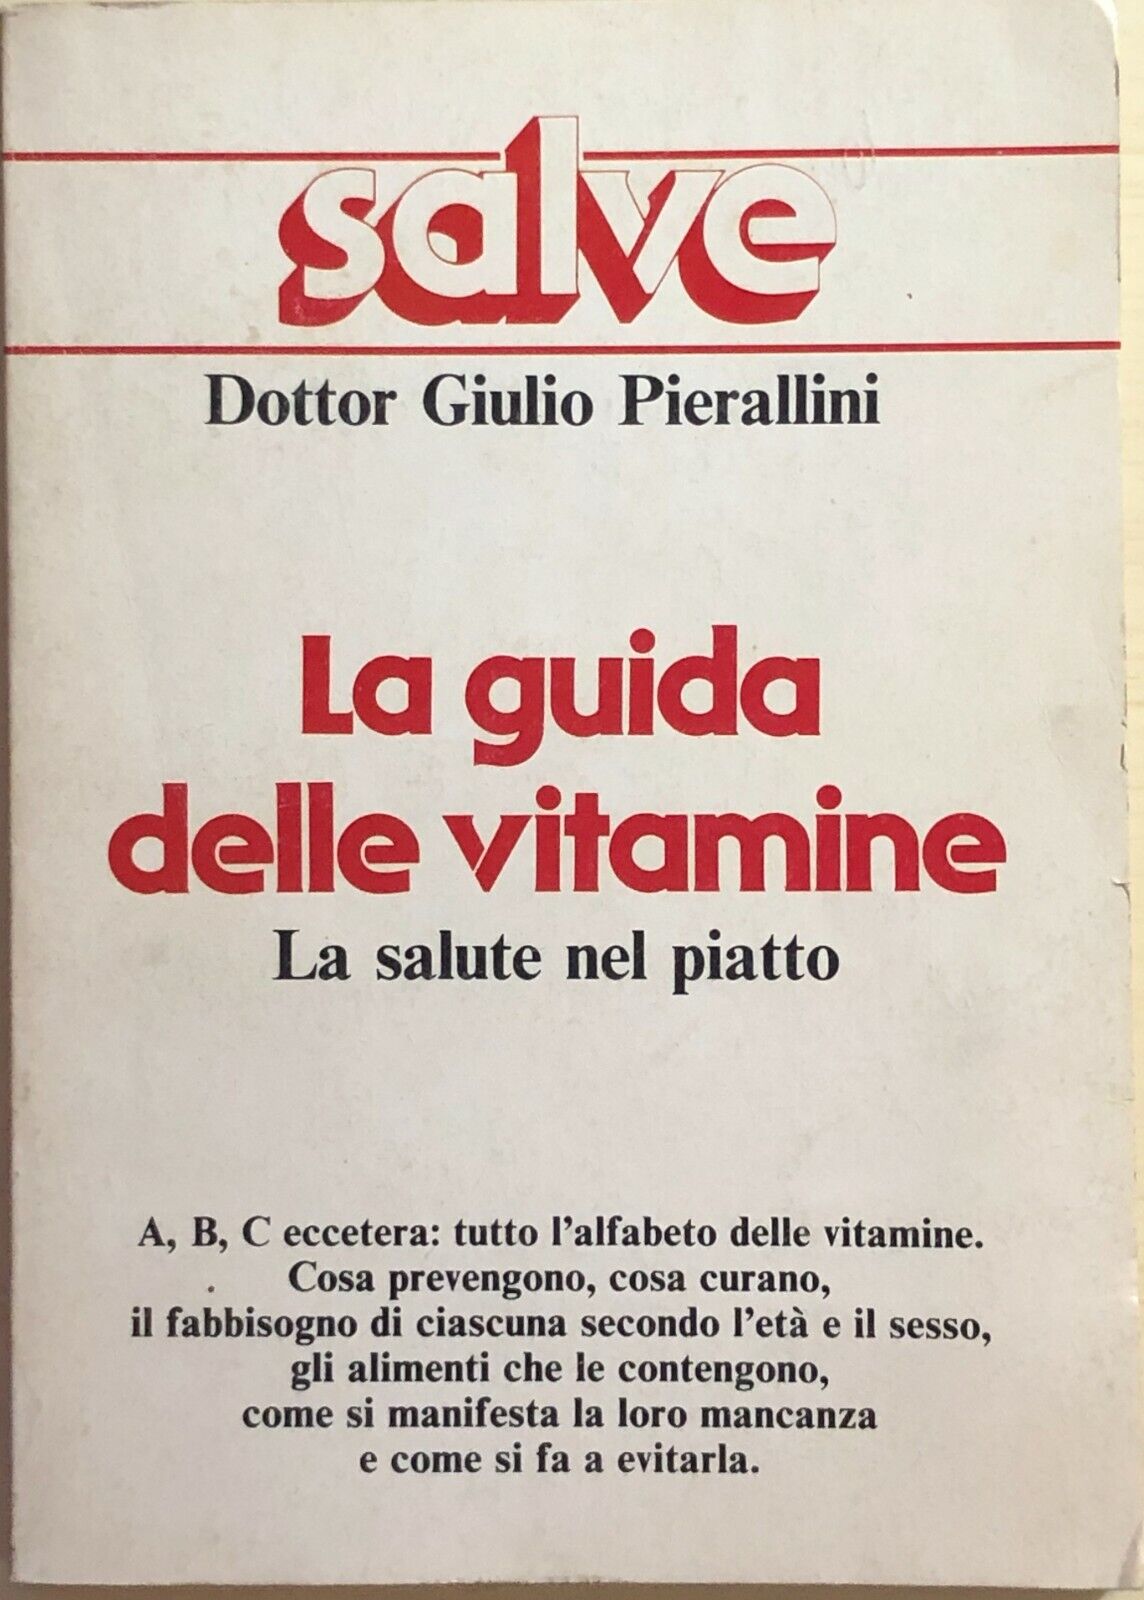 La guida delle vitamine di Dott. Giulio Pierallini, 1984, Salve